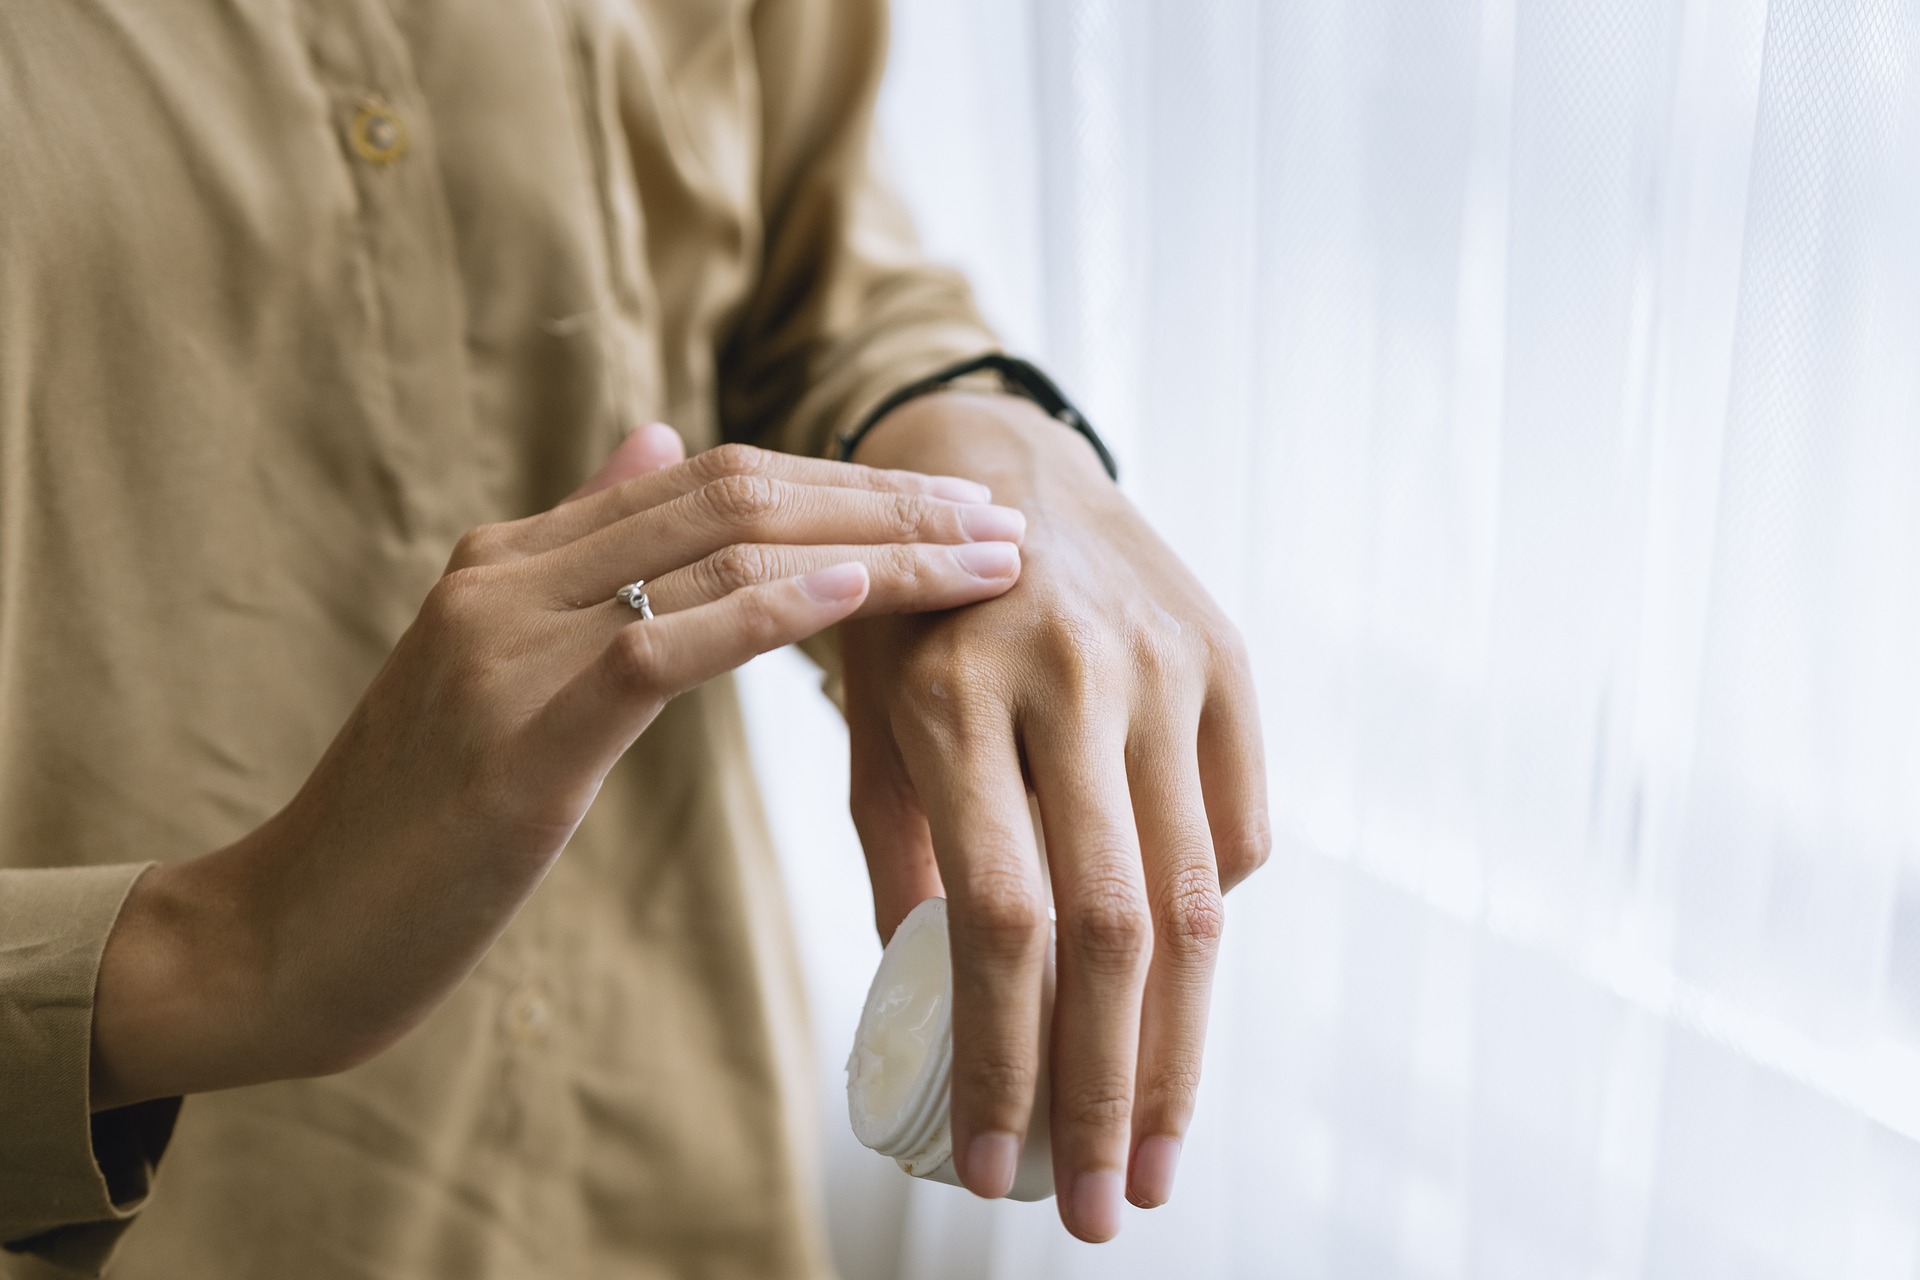 Хроничната екзема на ръцете се повлиява от нова локална биологична терапия